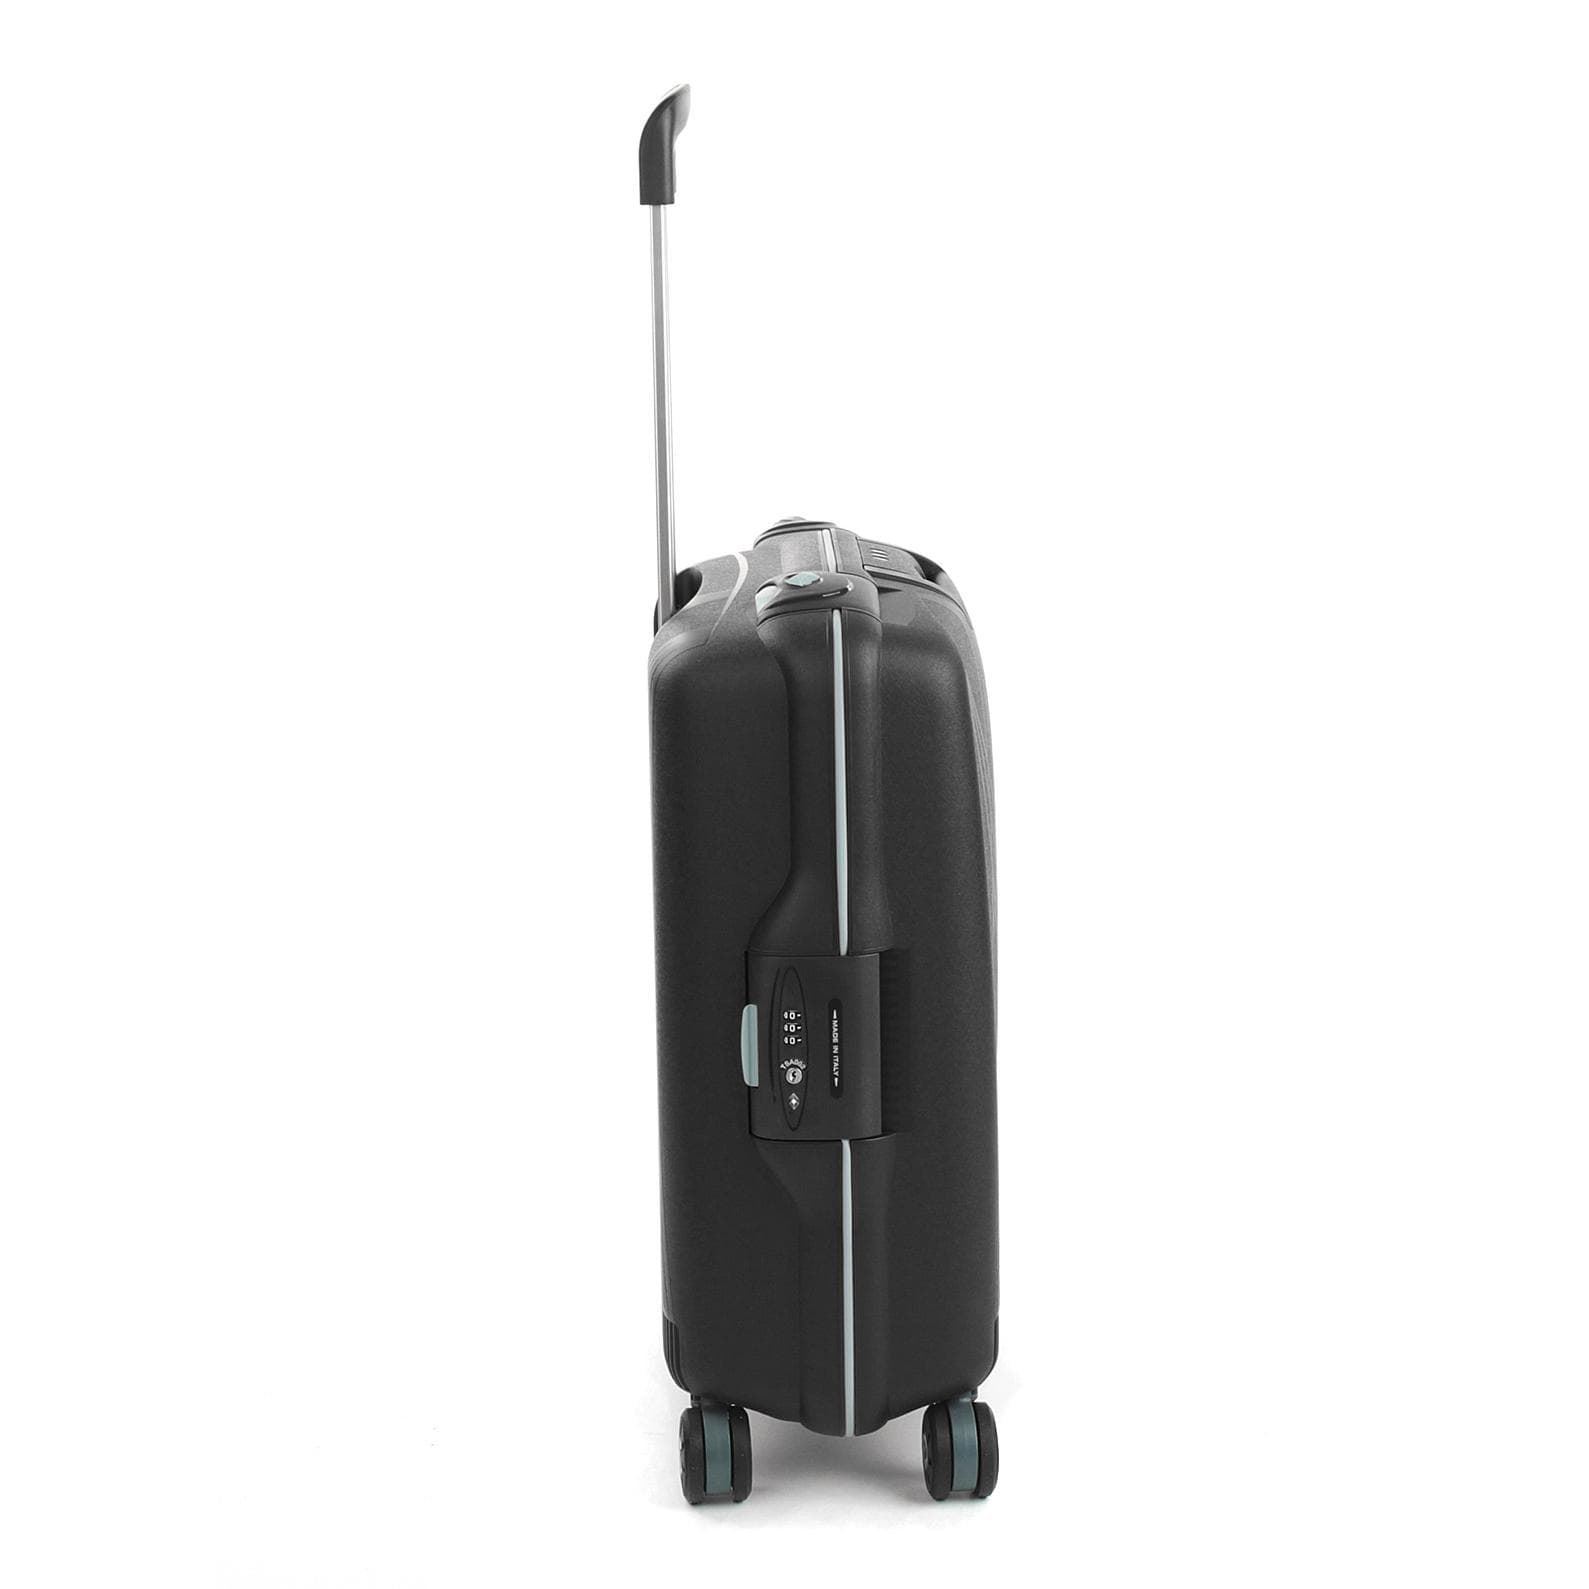 maleta cabina Roncato light spinner 4 ruedas negra - Imagen 3